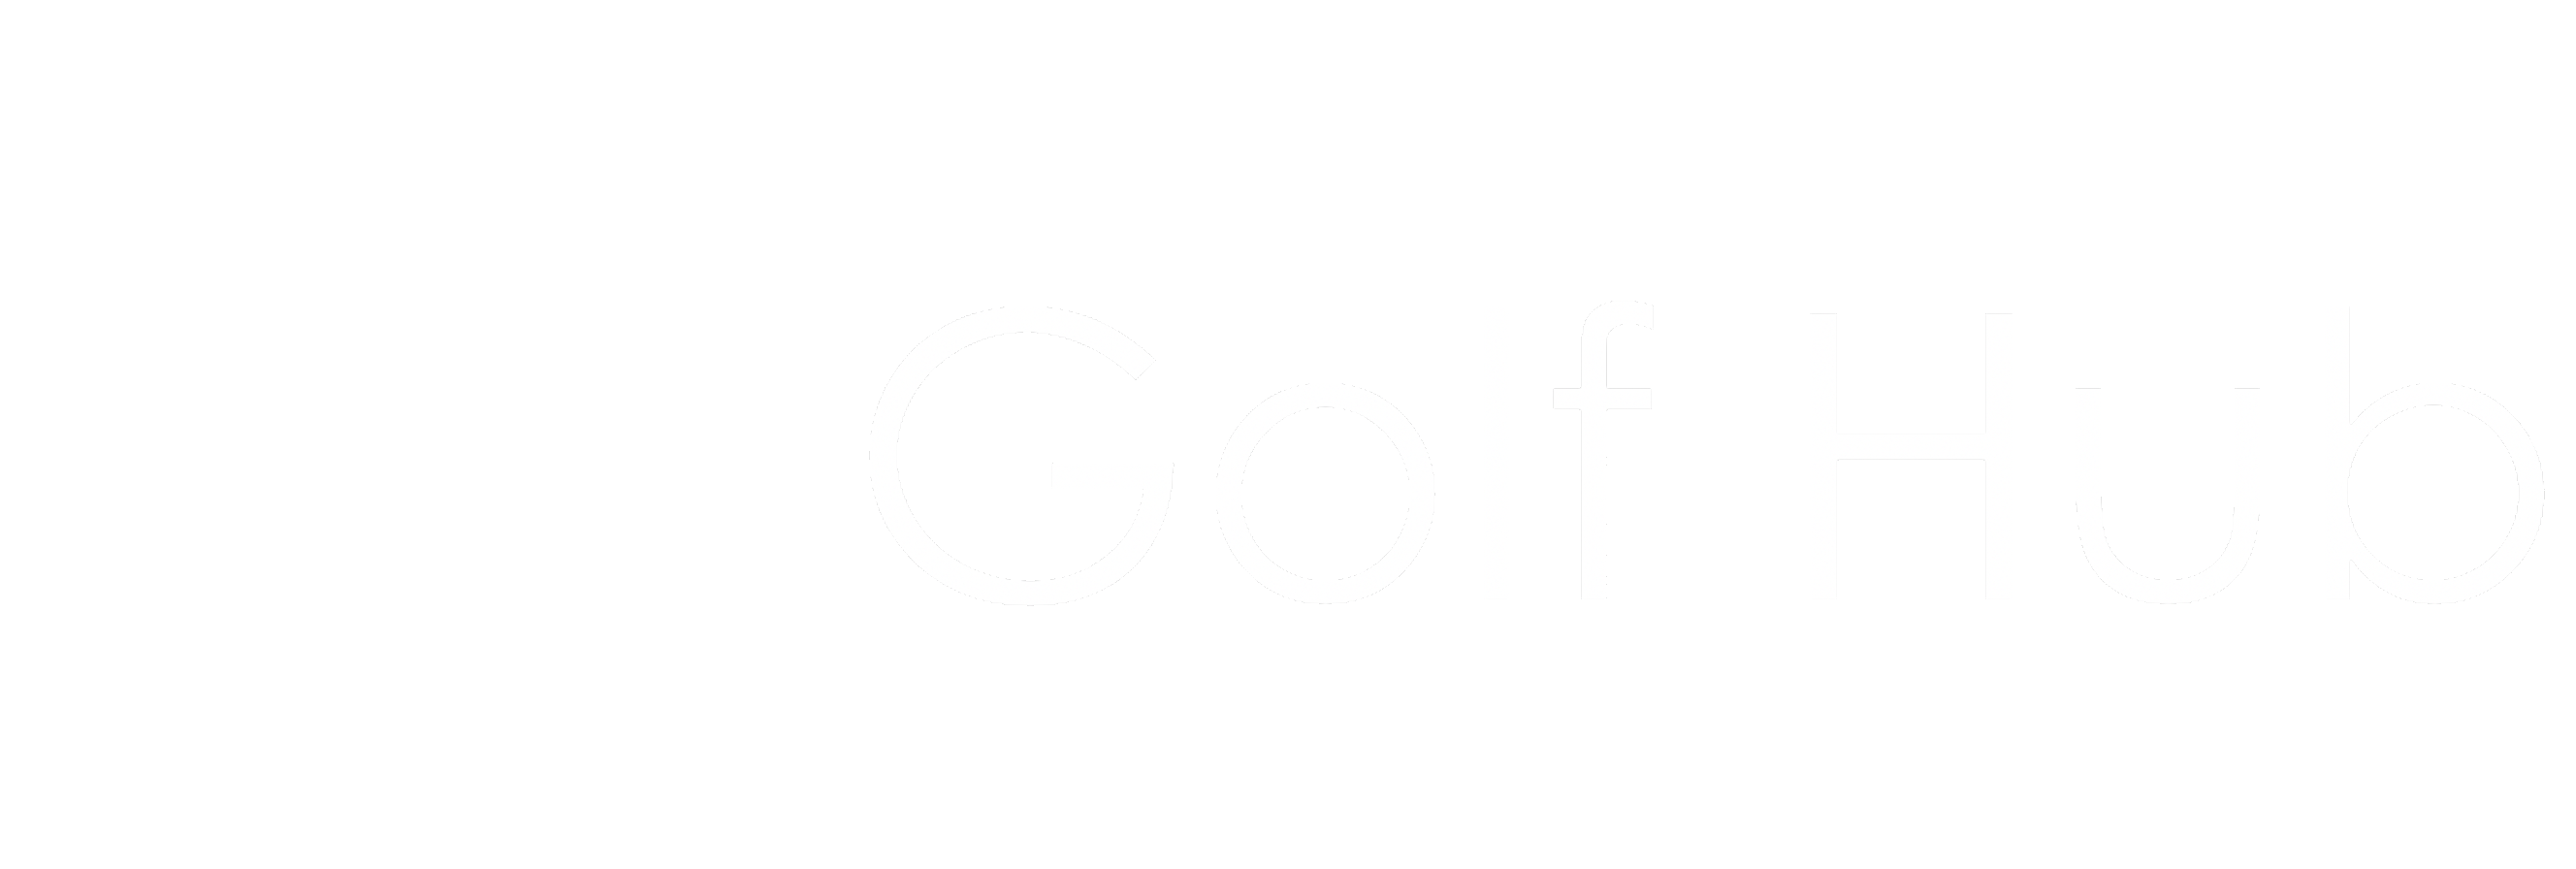 Golf Website